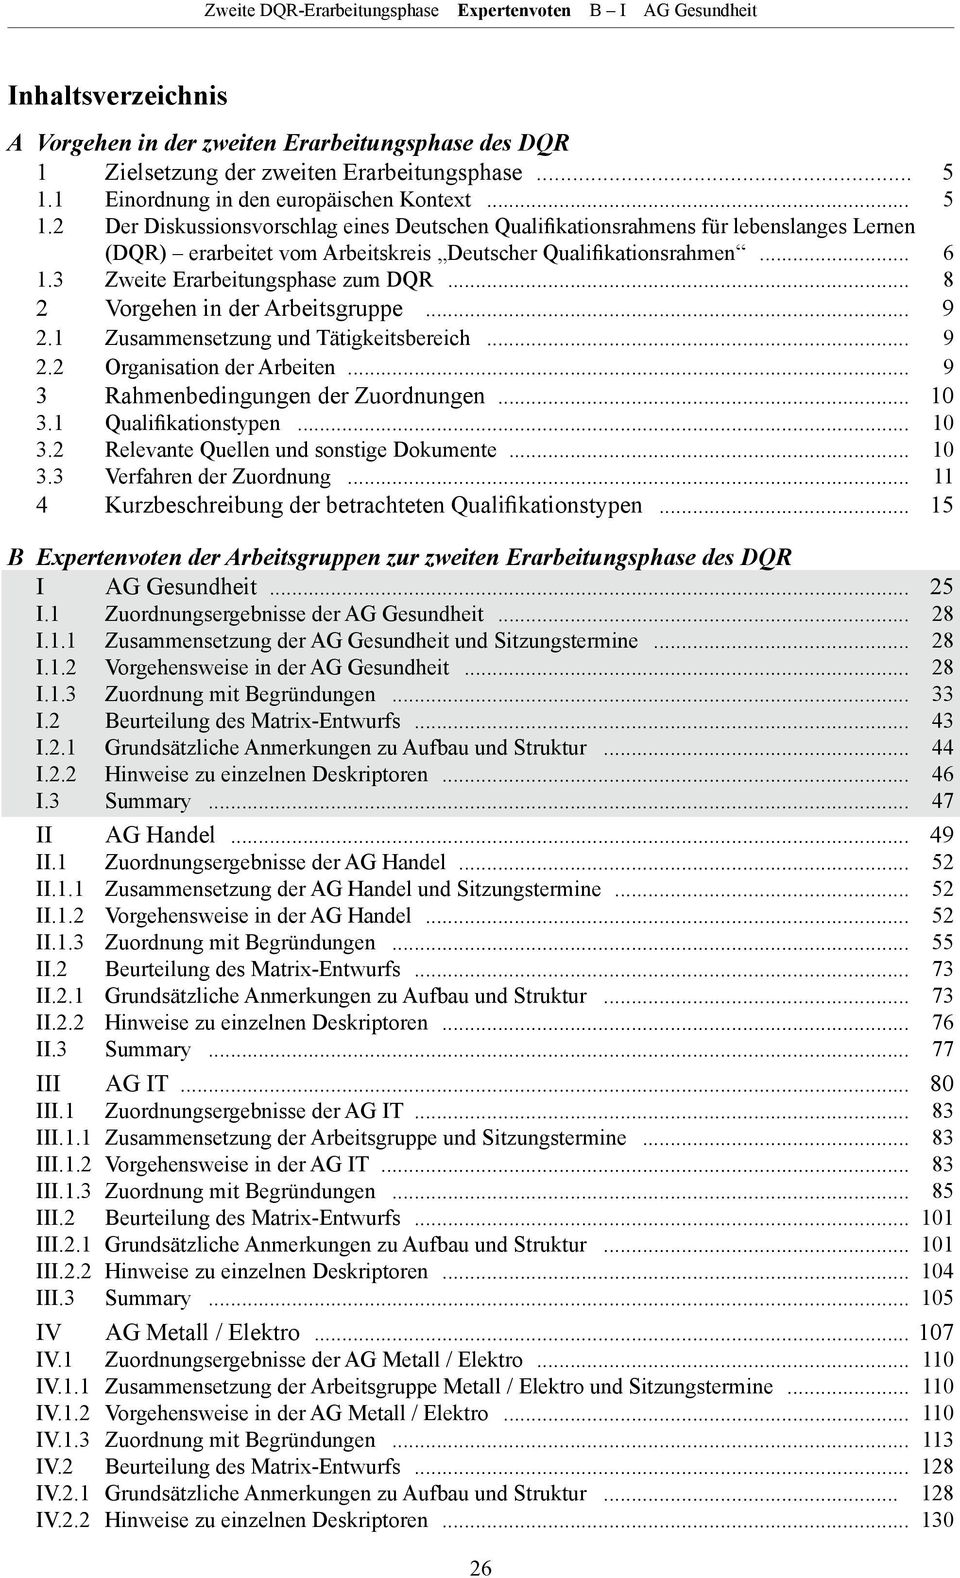 2 Der Diskussionsvorschlag eines Deutschen Qualifikationsrahmens für lebenslanges Lernen (DQR) erarbeitet vom Arbeitskreis Deutscher Qualifikationsrahmen... 6 1.3 Zweite Erarbeitungsphase zum DQR.